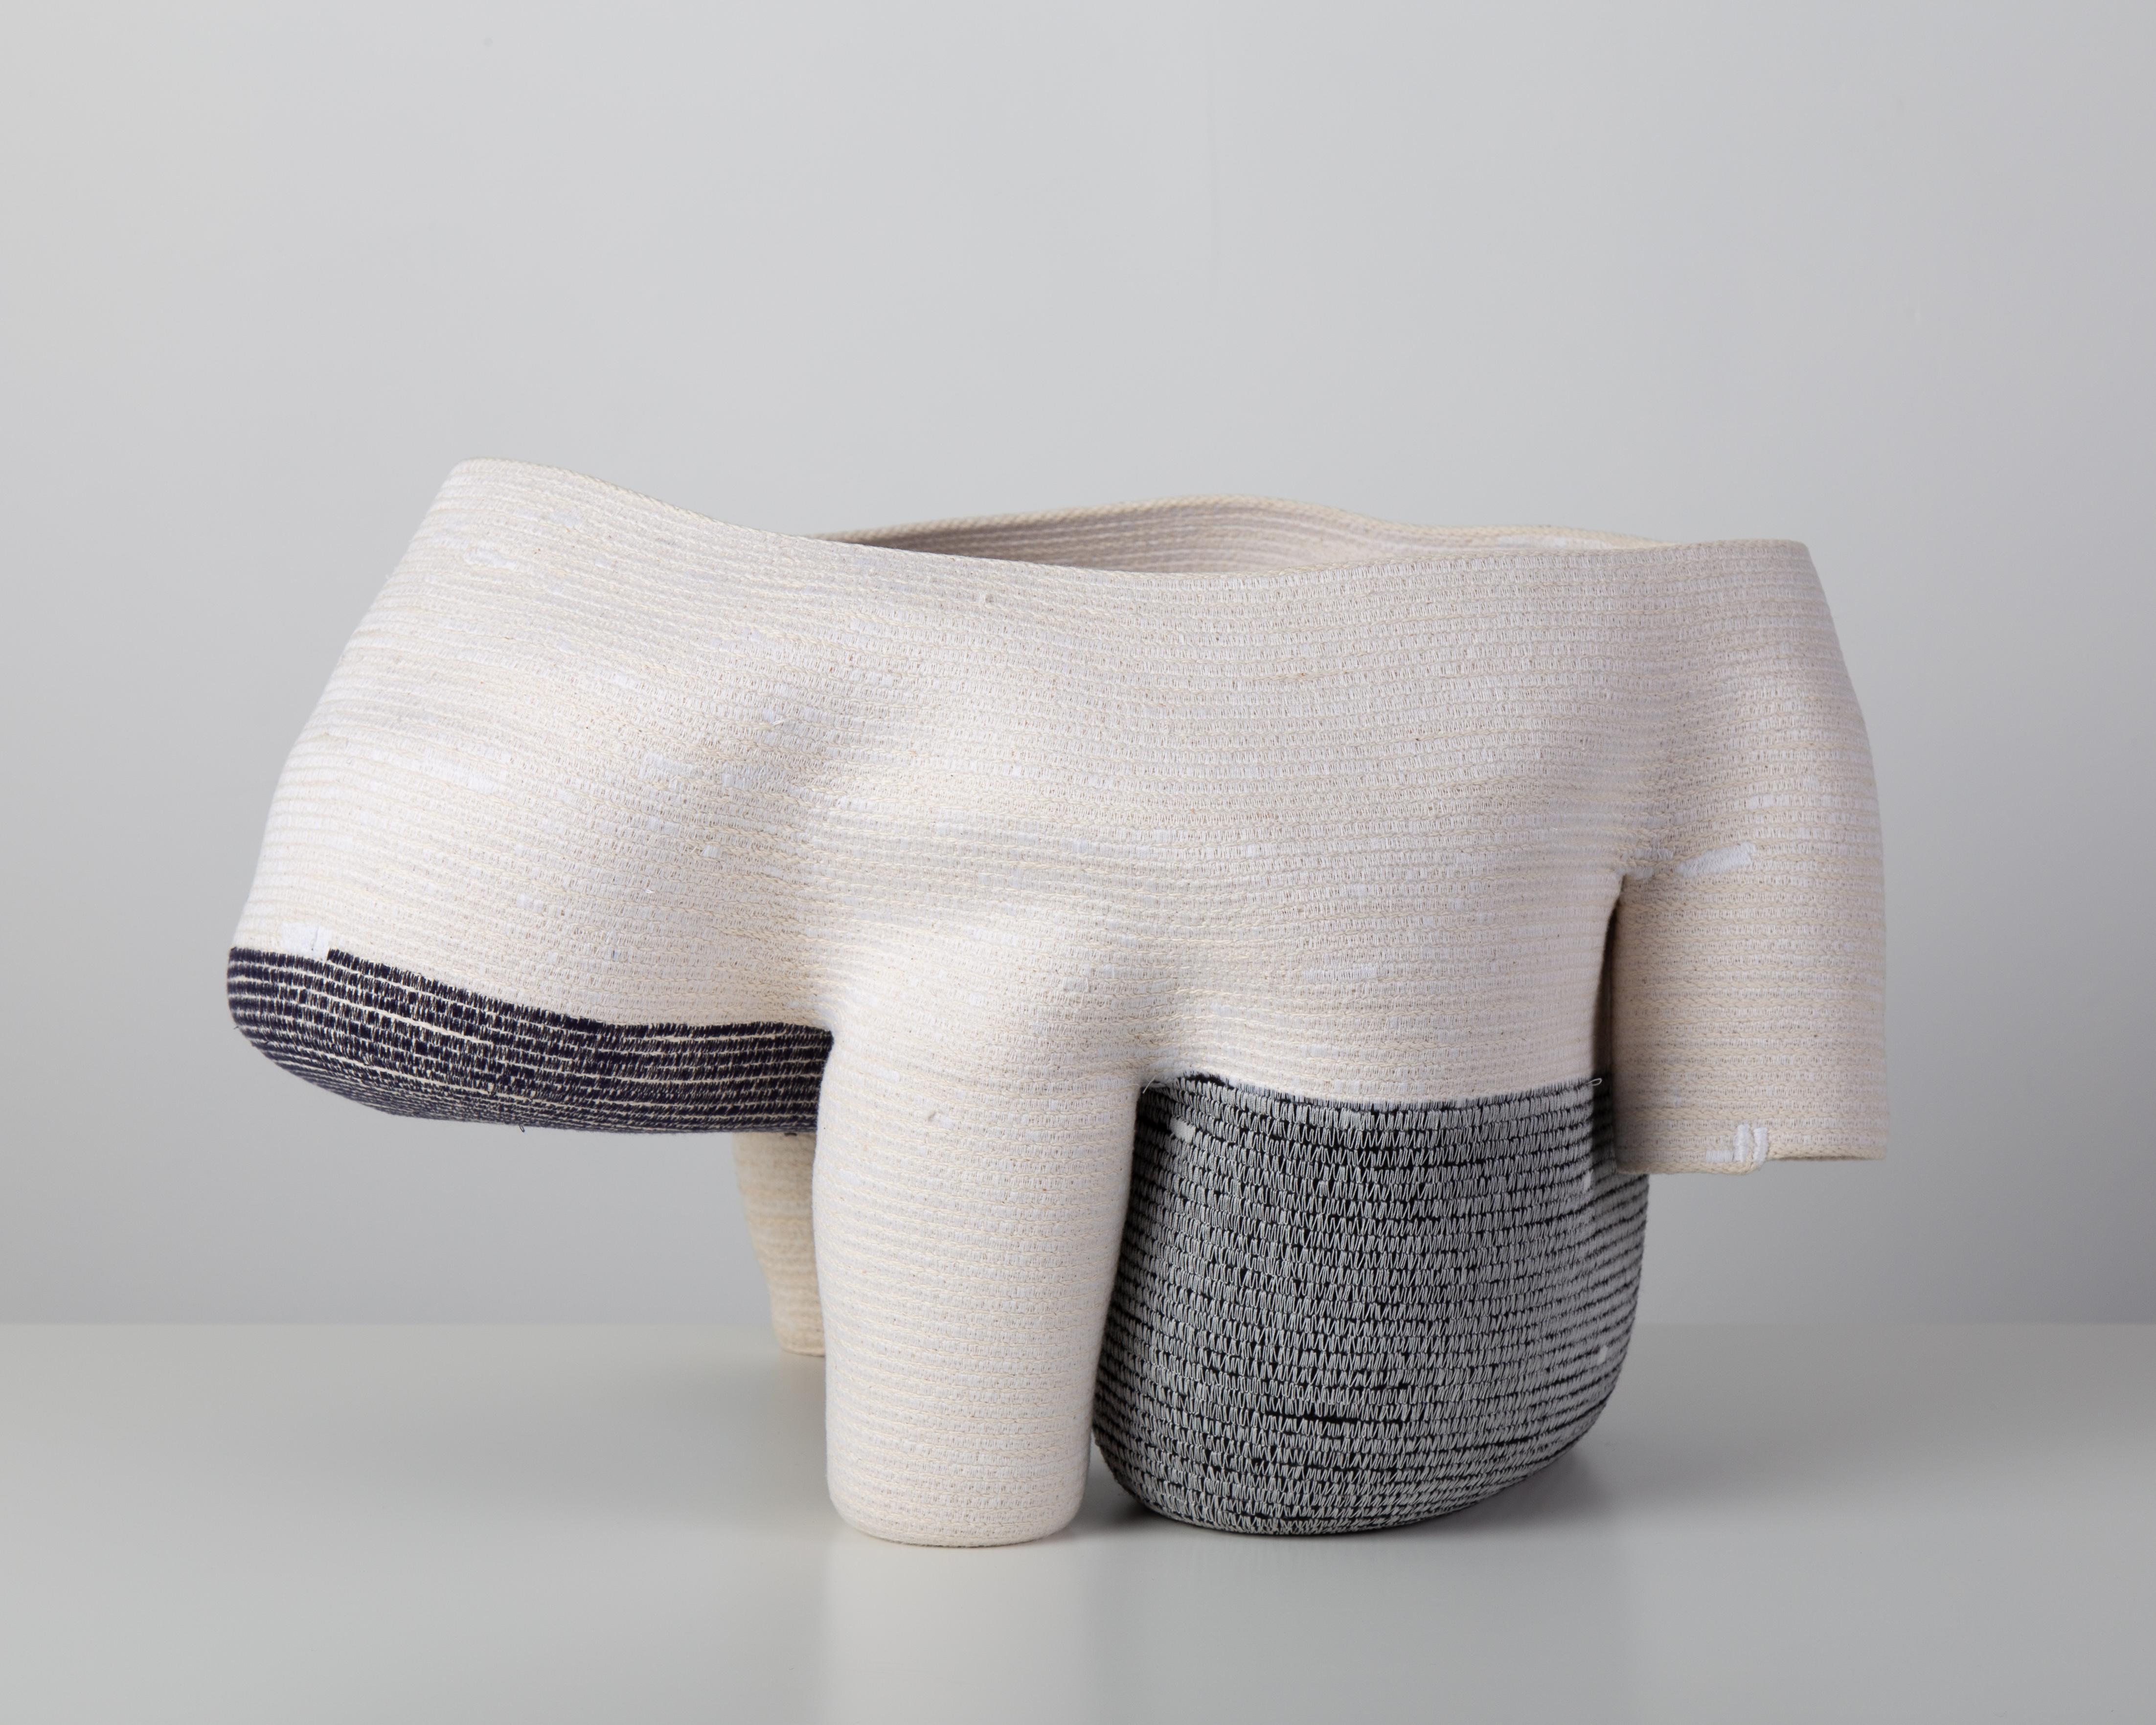 « Vase sans titre de 15 cm » Sculpture en fibre de coton enroulée et cousue de Doug Johnston 3